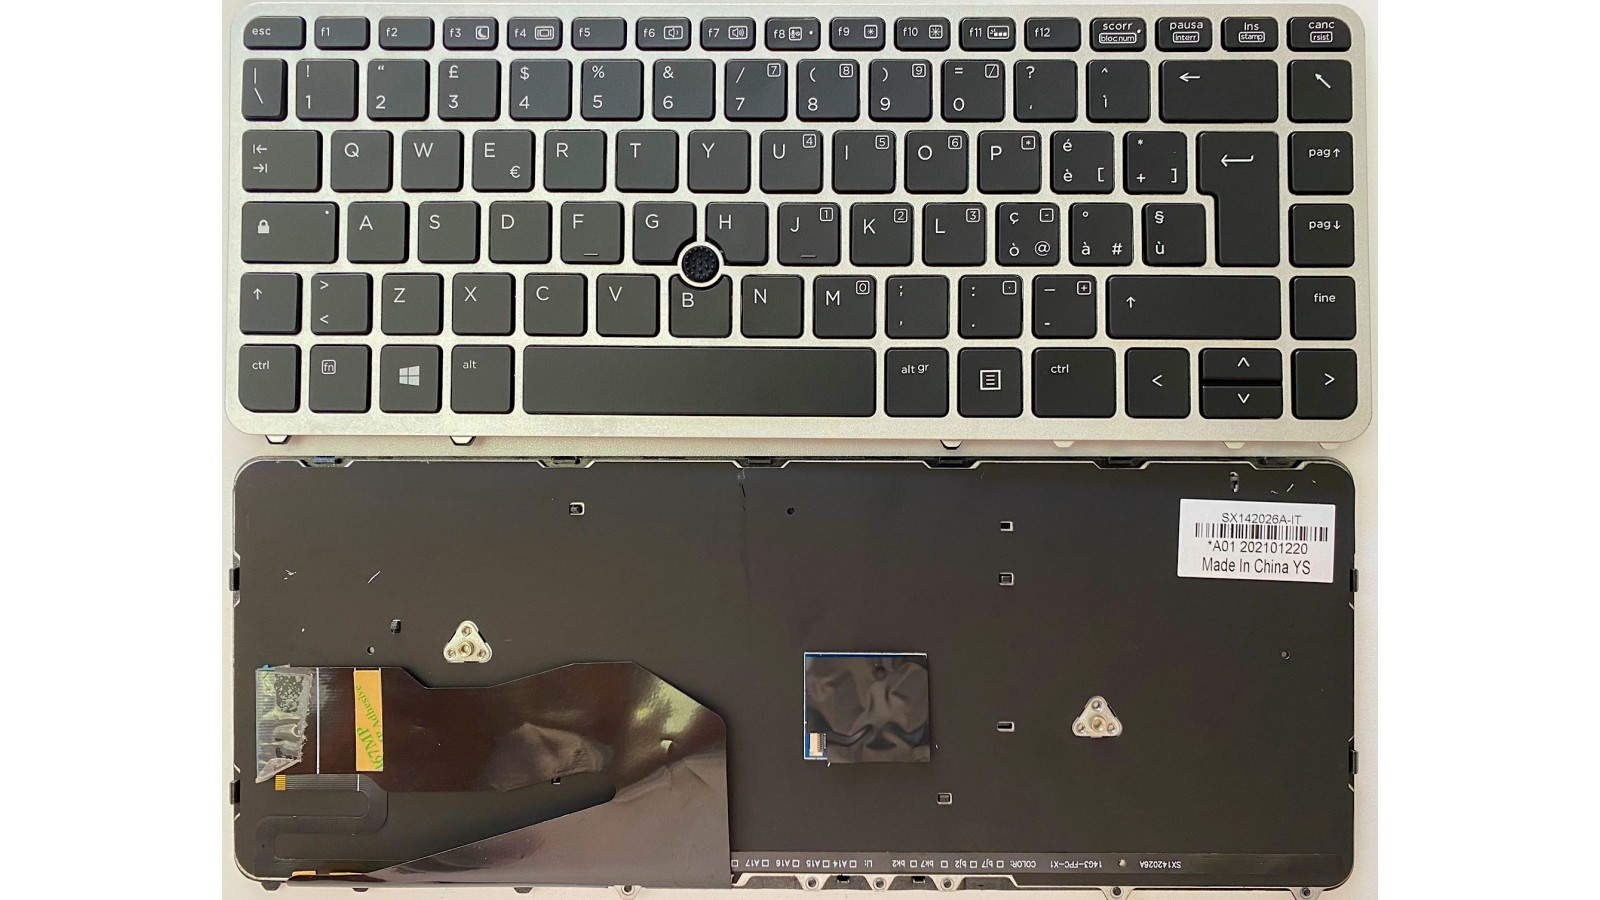 Tastiera Italiana compatibile con Hp EliteBook 840 G1 850 G1 Retroiiluminata con Trackpad